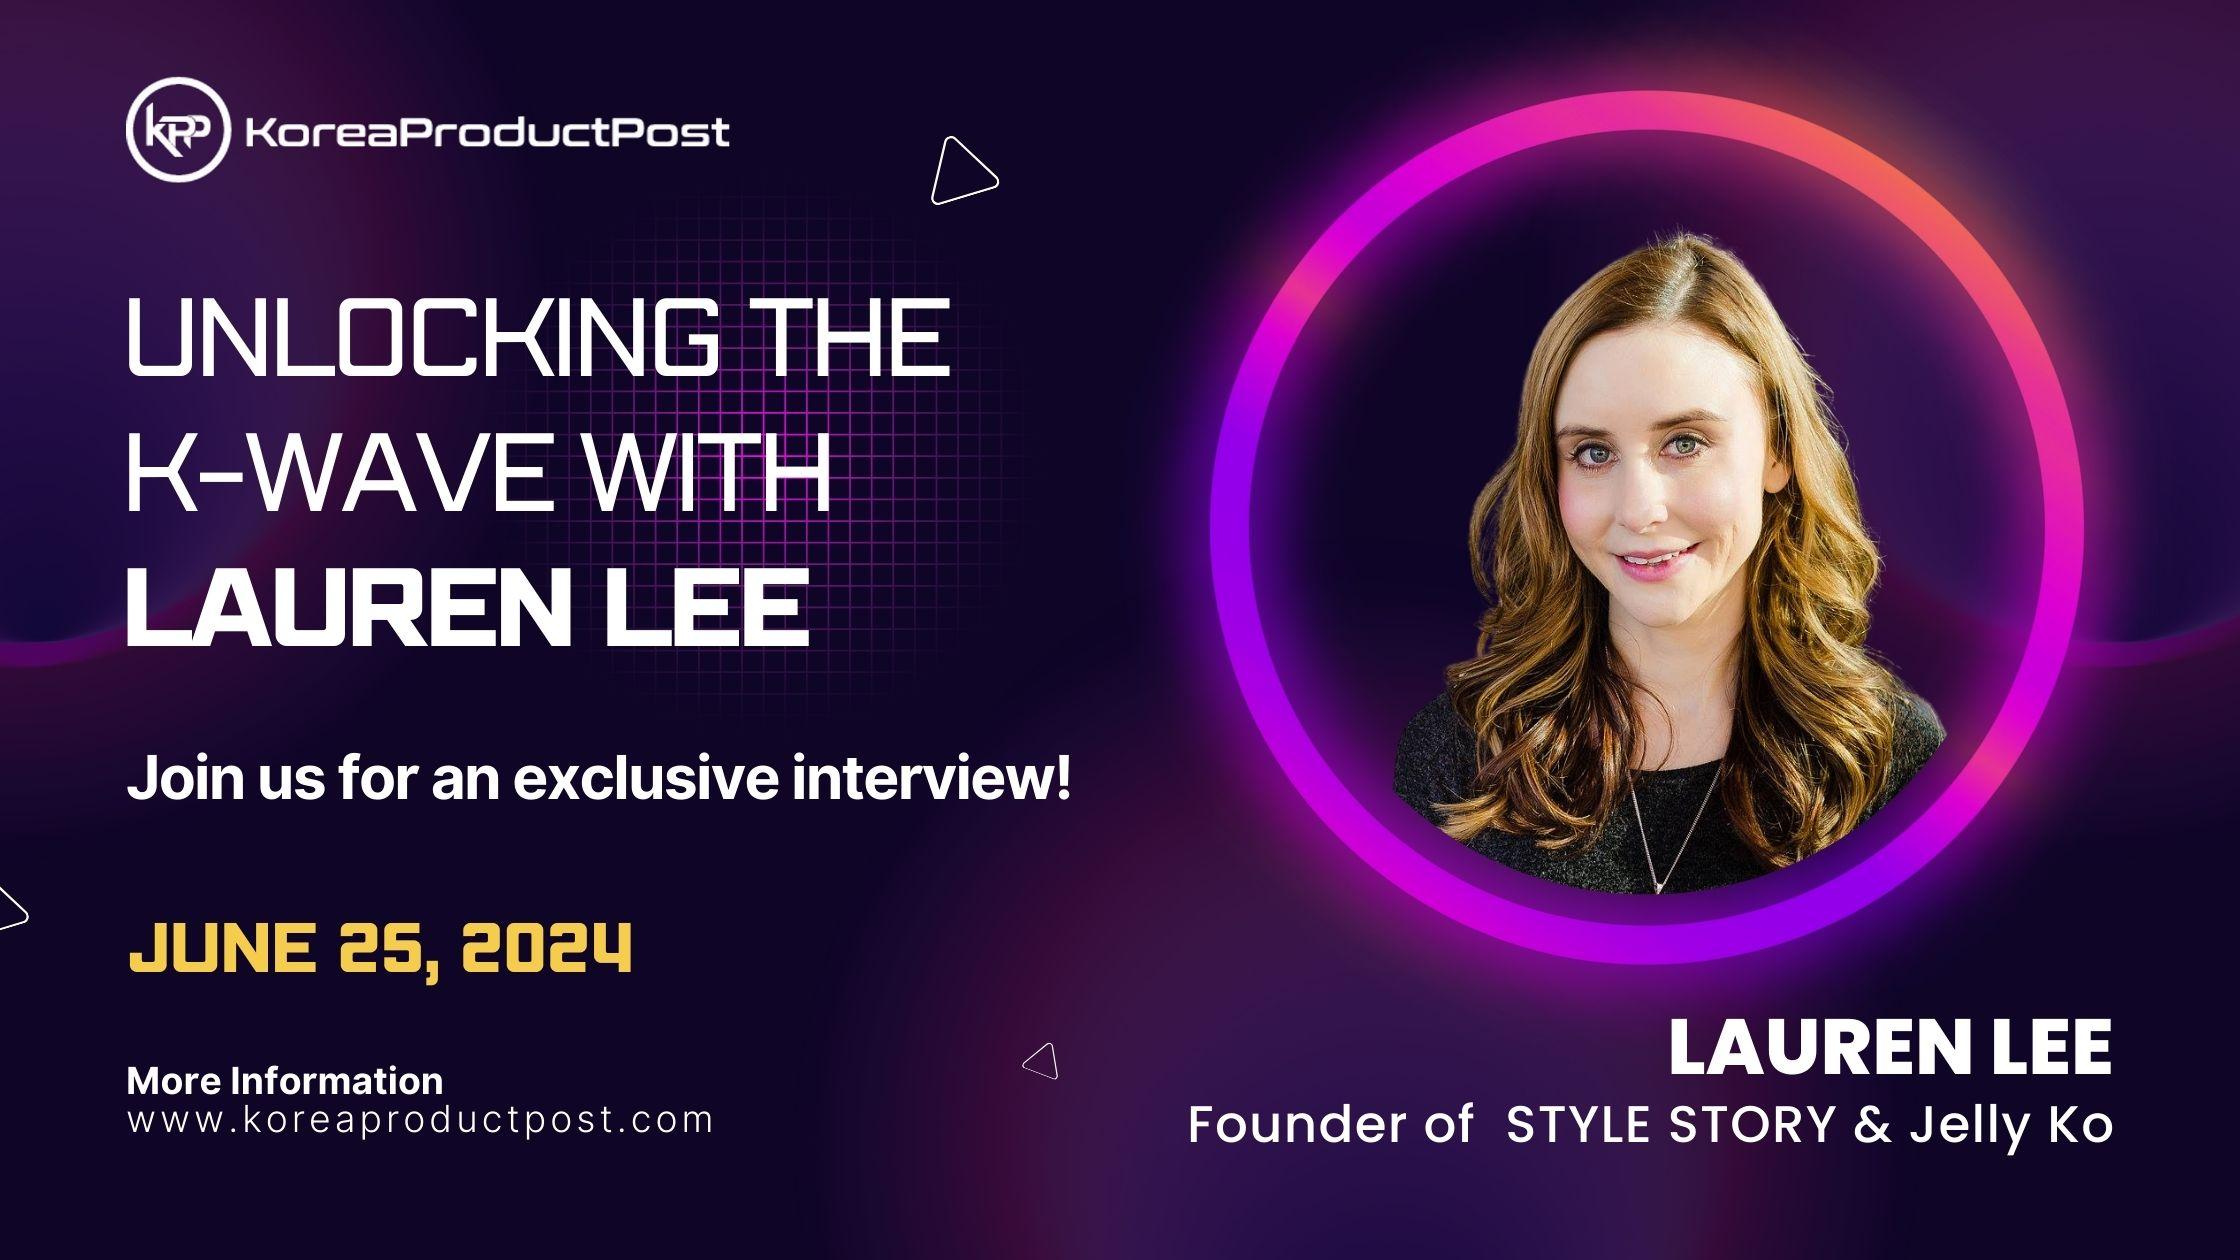 K-expert Lauren Lee interview with koreaproductpost